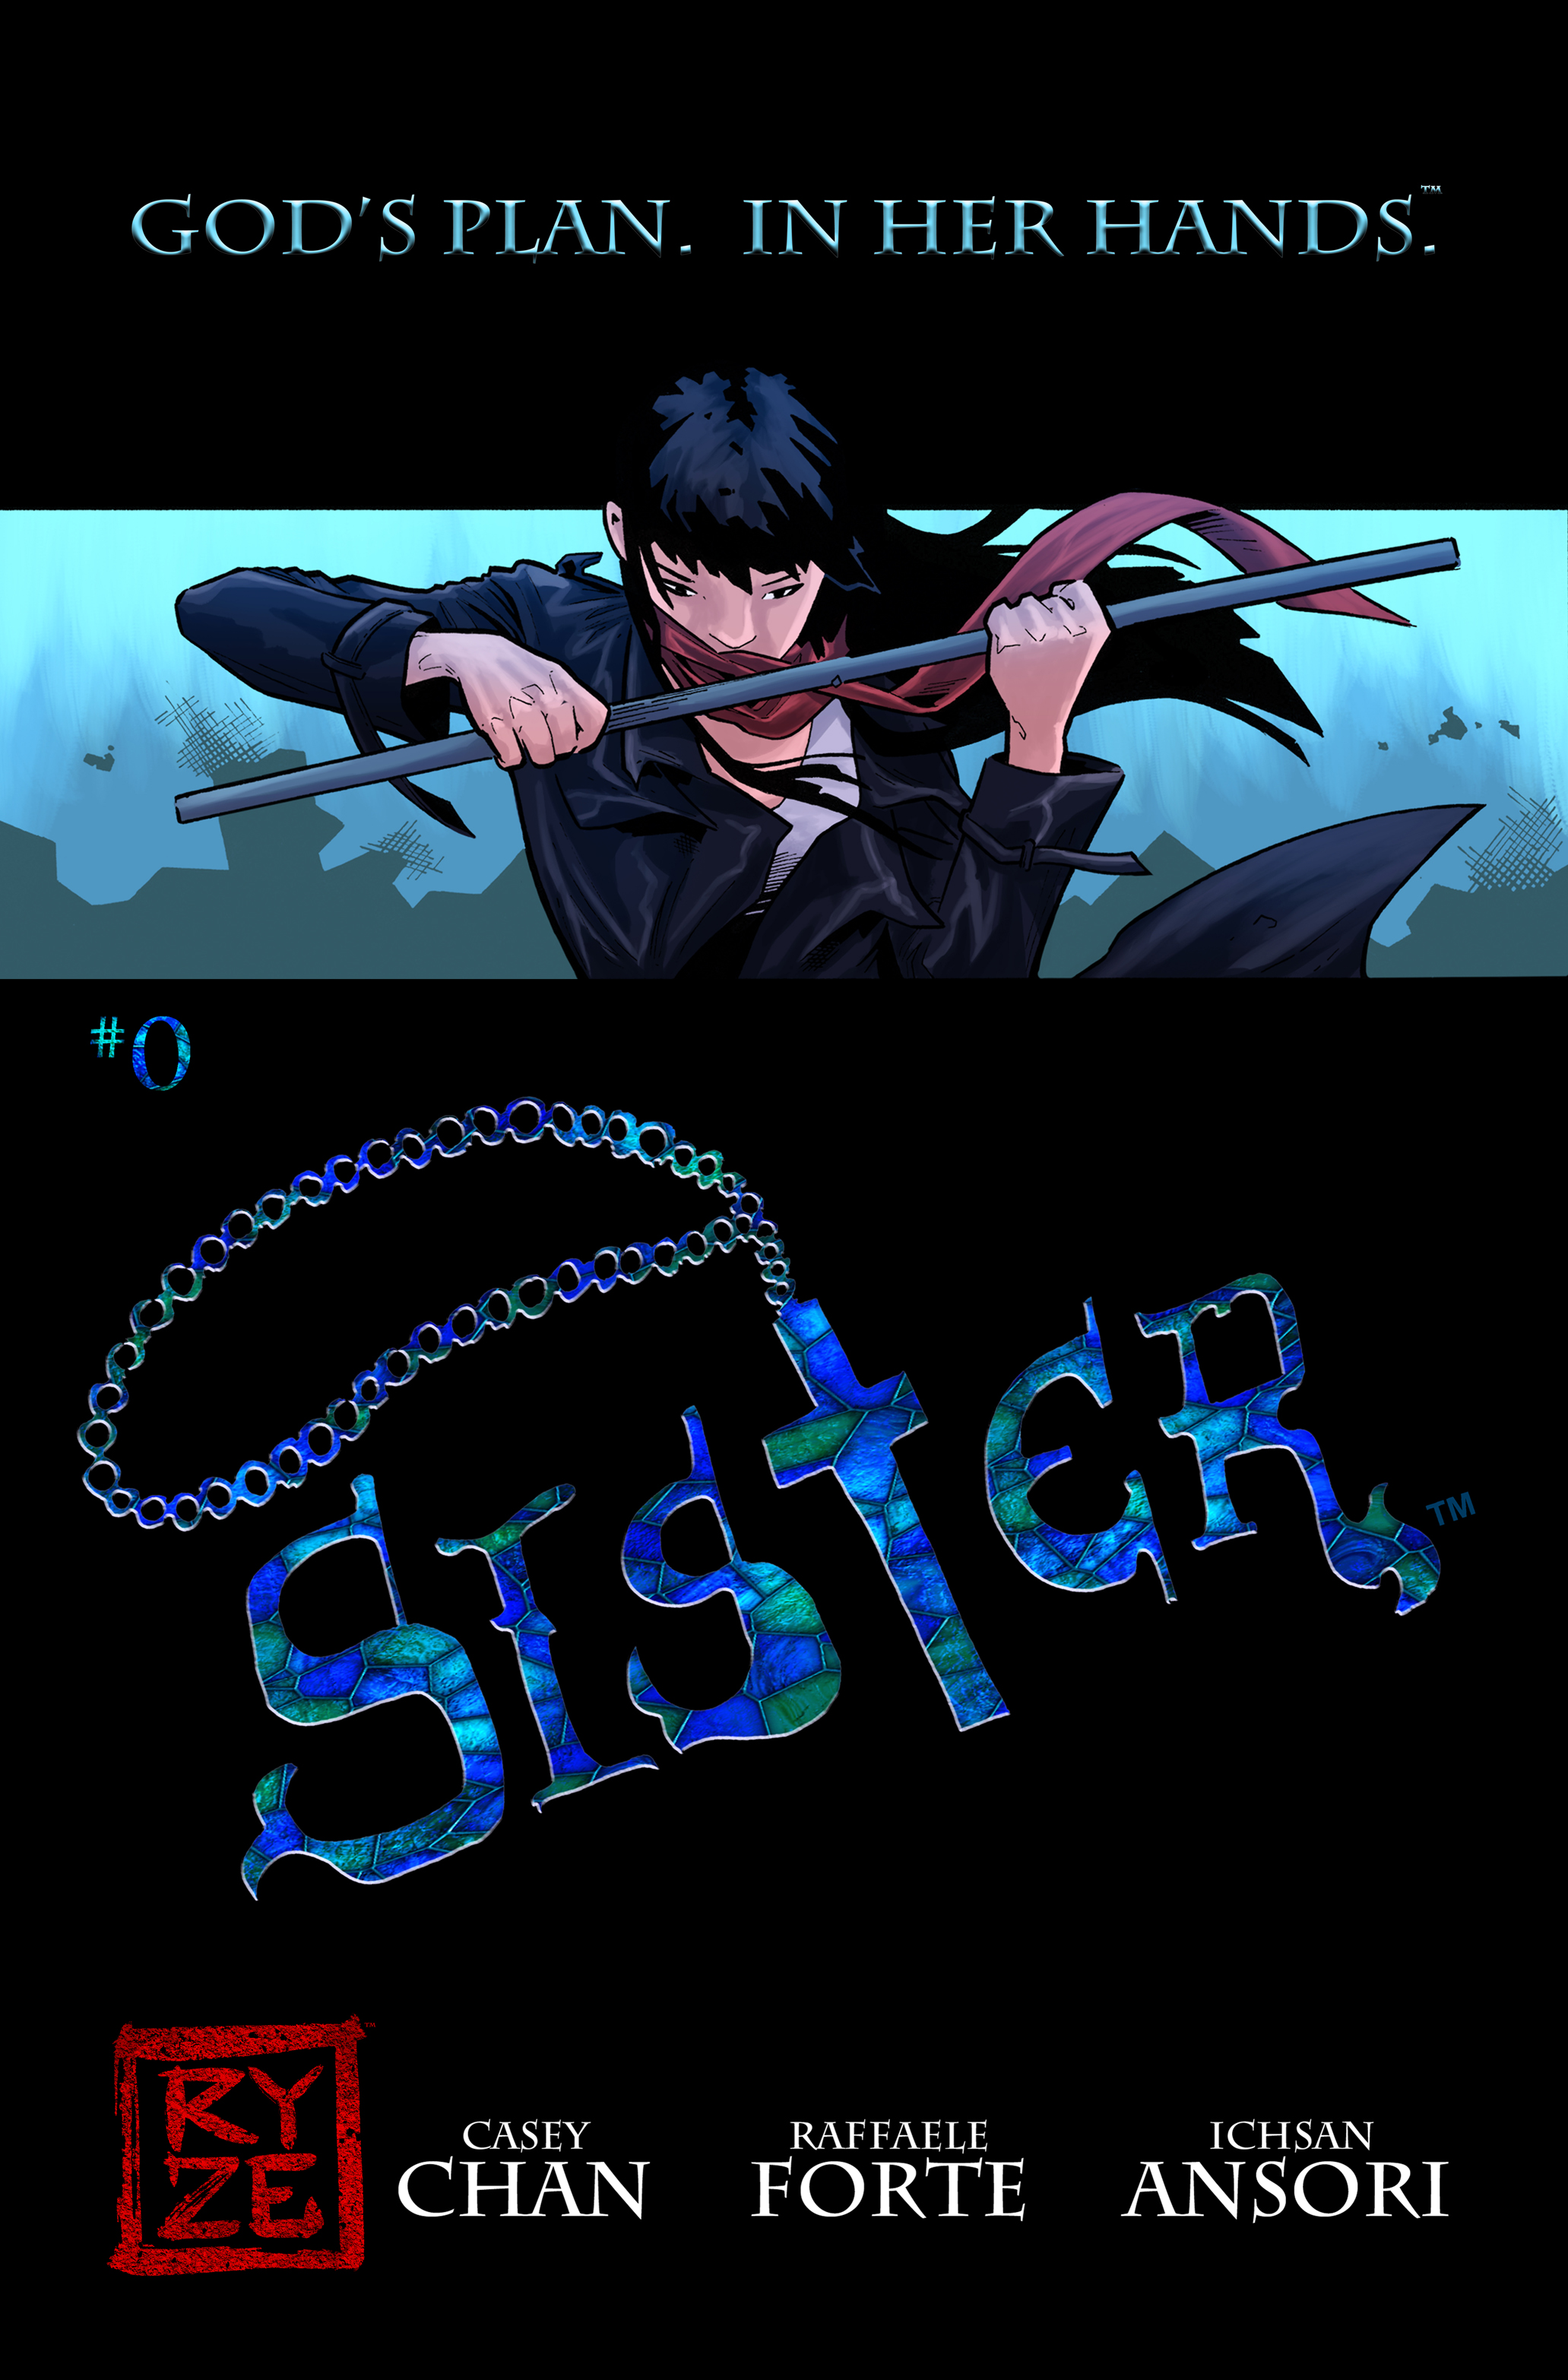 SISTER_0_RyzeComics_0A.jpg